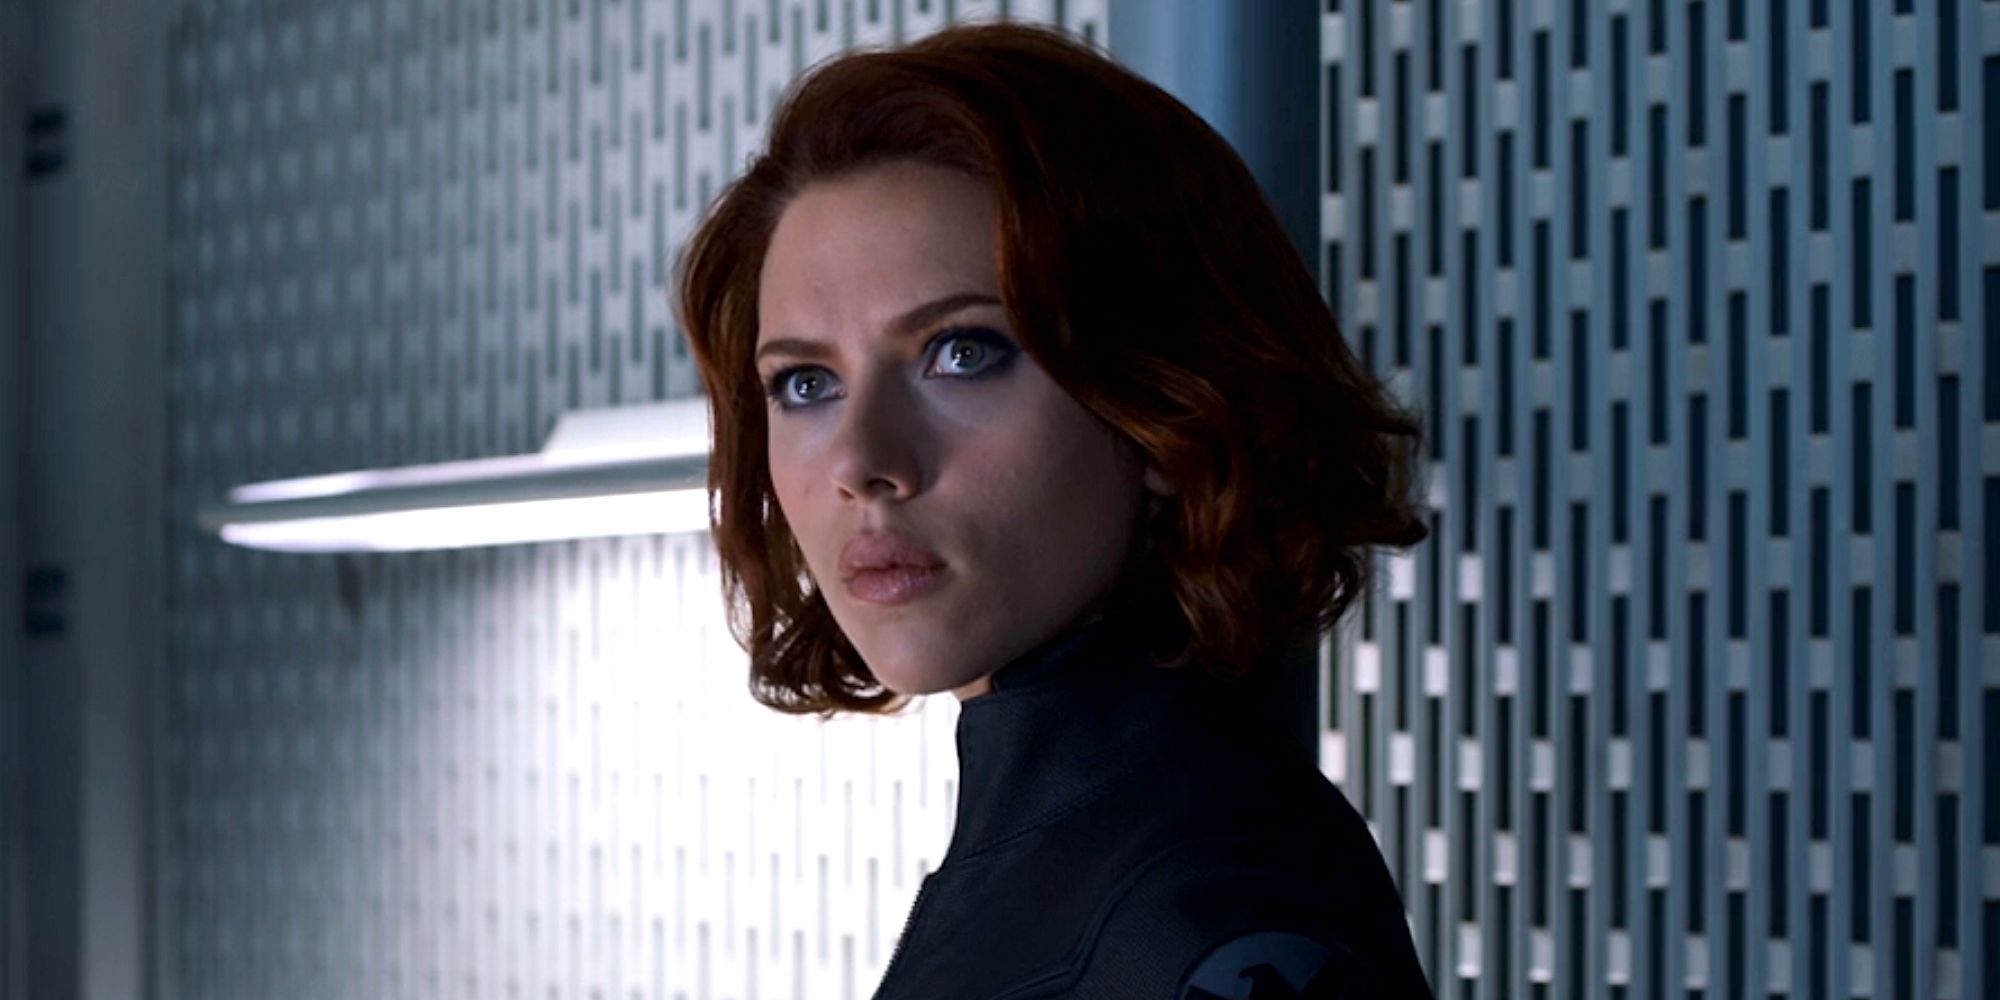 Scarlett Johansson as Black Widow in 2012's Avengers